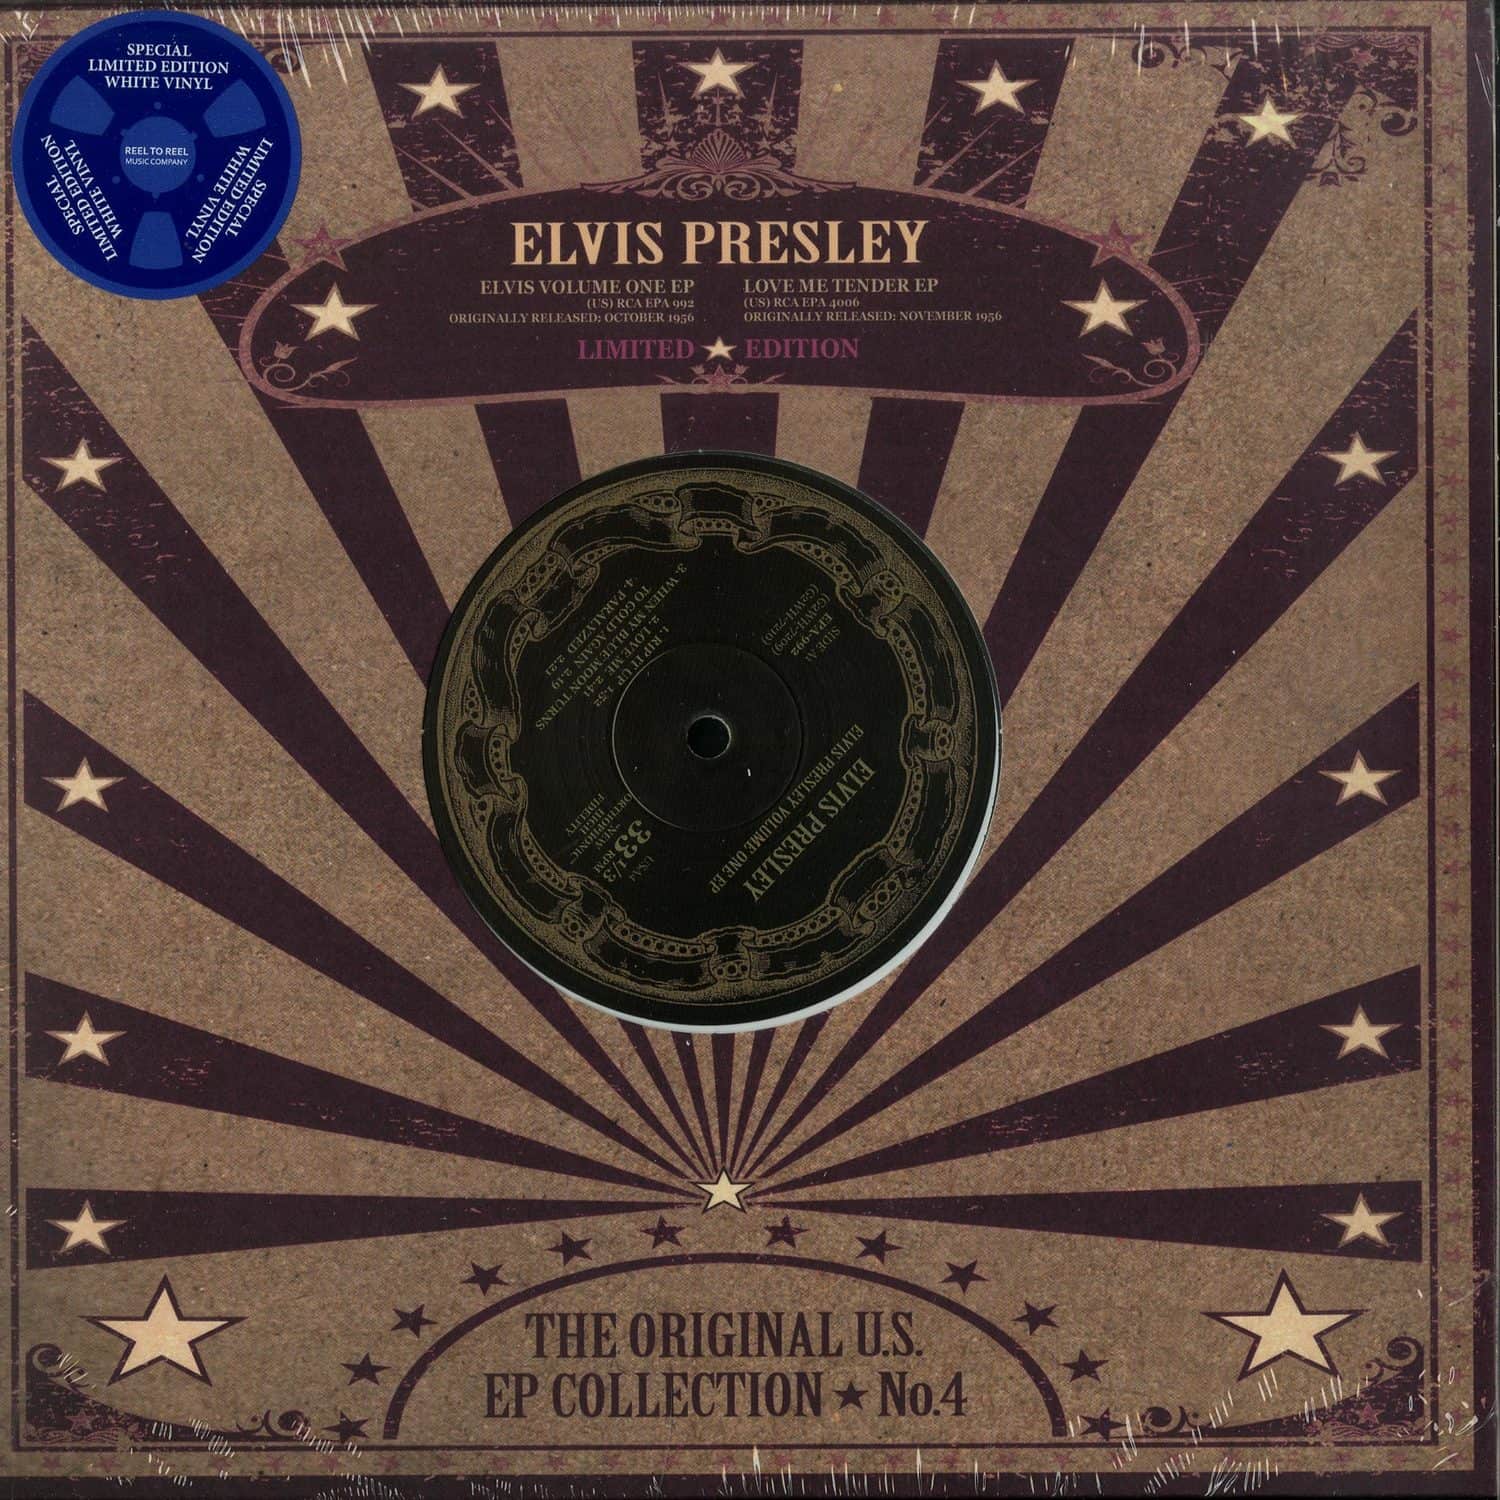 Elvis Presley - US EP COLLECTION VOL.4 